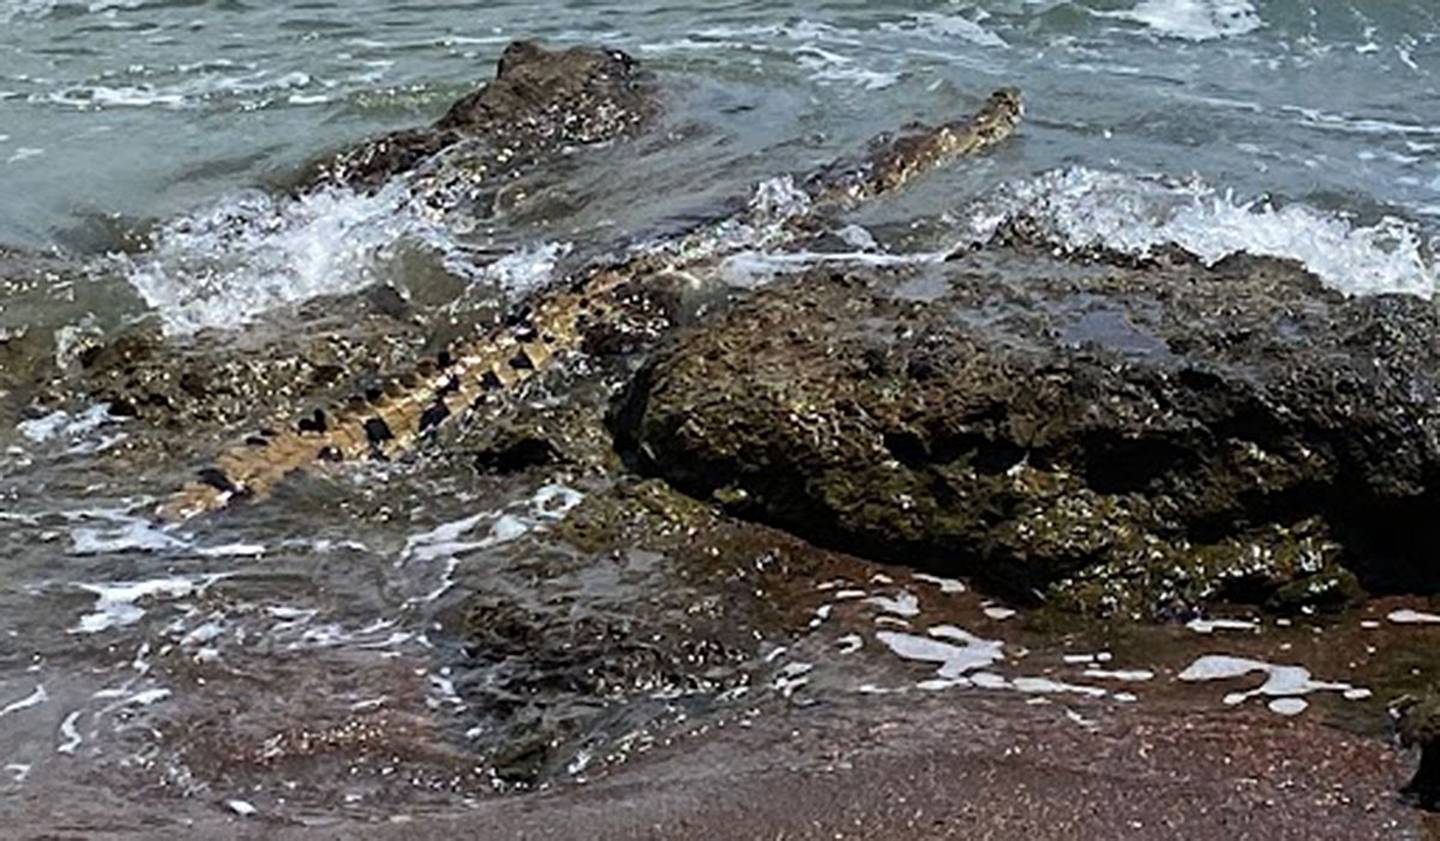 Varios turistas y residentes de playa Jacó, del cantón de Garabito, se quedaron asombrados al presenciar a un cocodrilo de dos metros nadando en un estero de la zona. Foto: Cortesía.